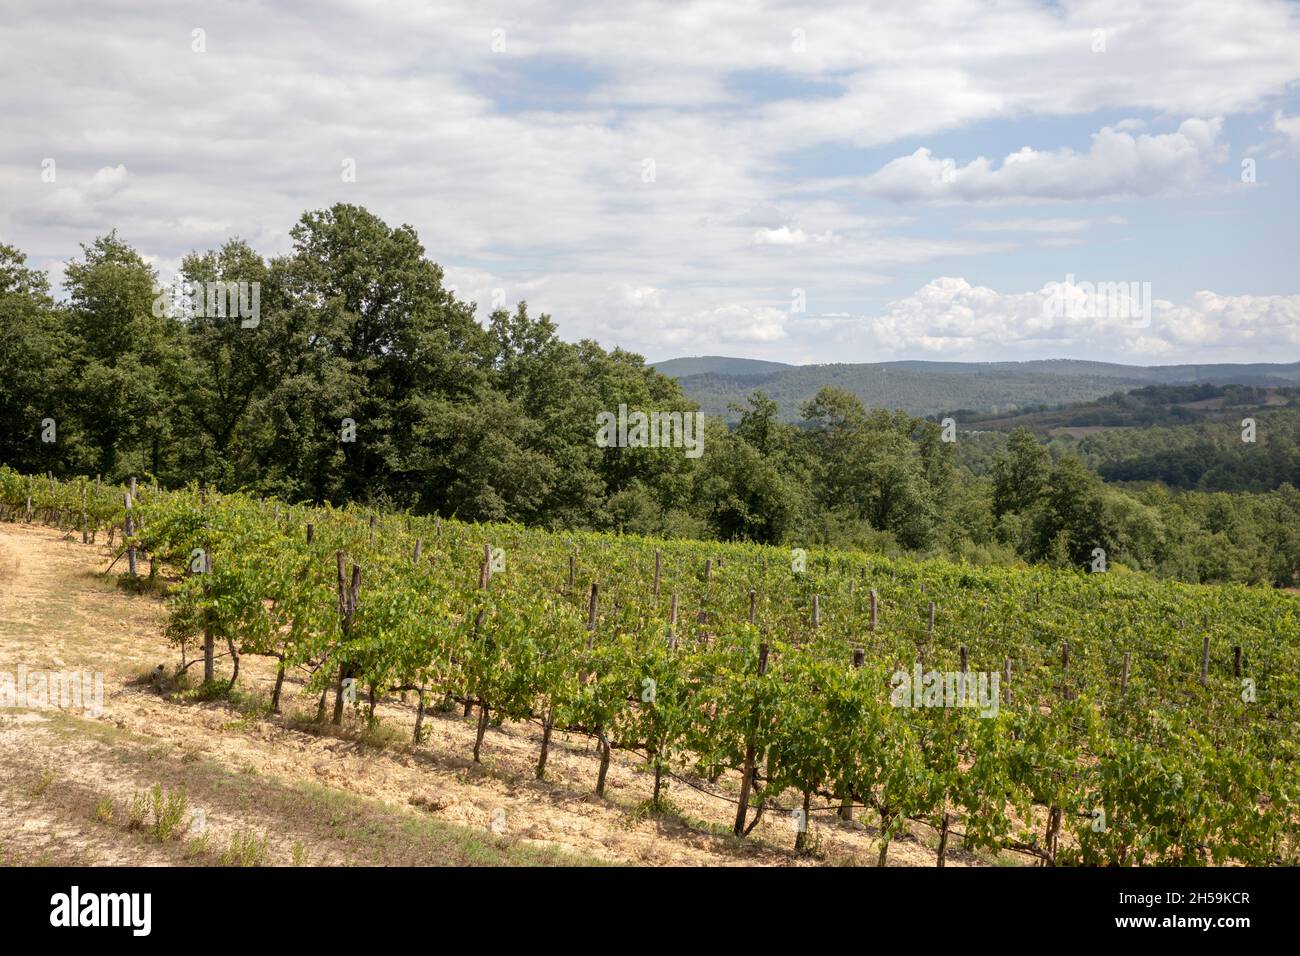 Vine cultivation near Abbazia San Galgano, Chiusdino, Siena, Tuscany, Italy Stock Photo